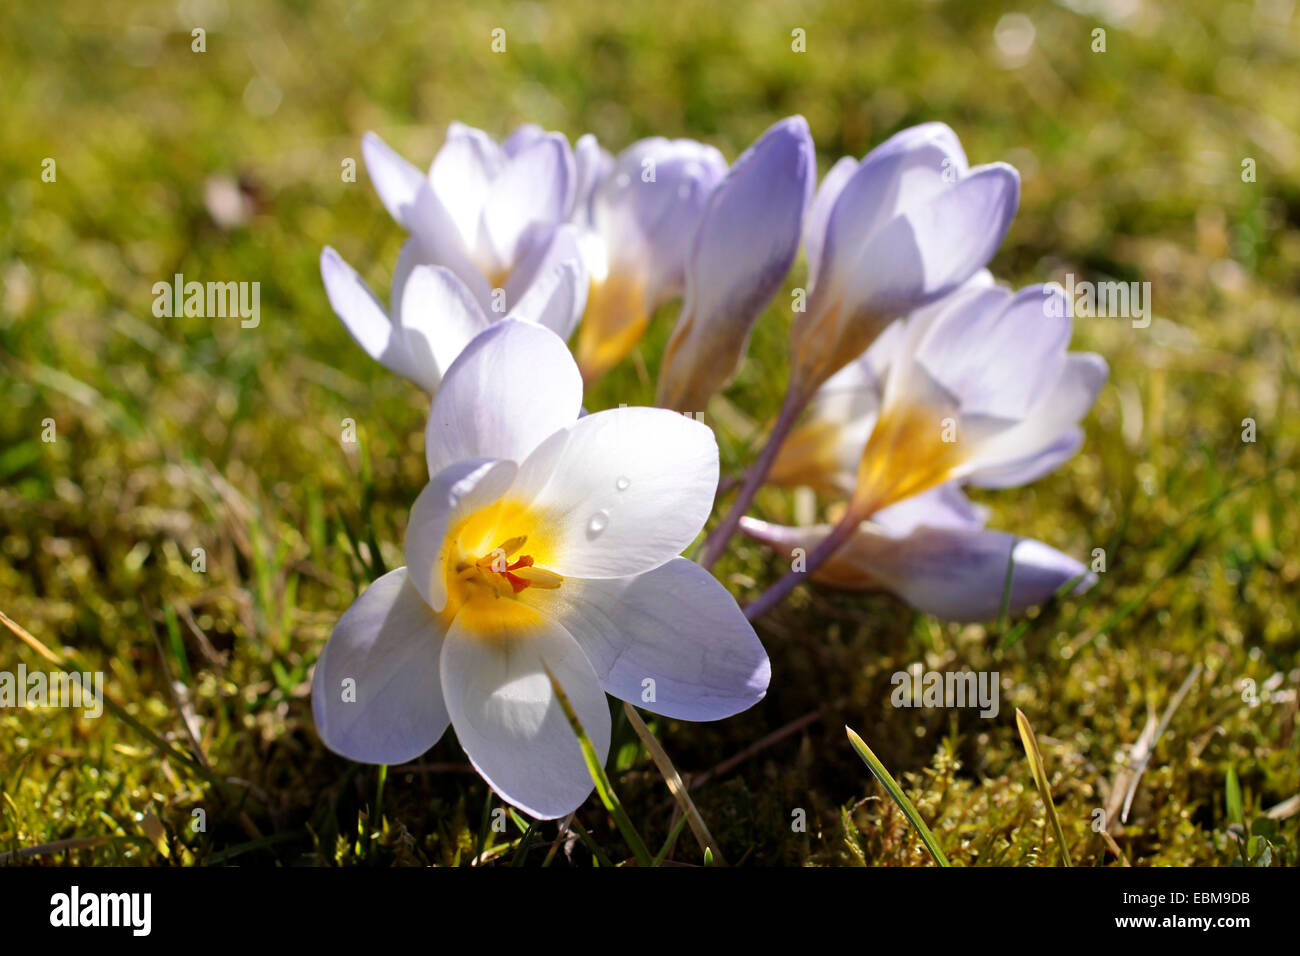 Crocus fleurs sur prairie au printemps Banque D'Images